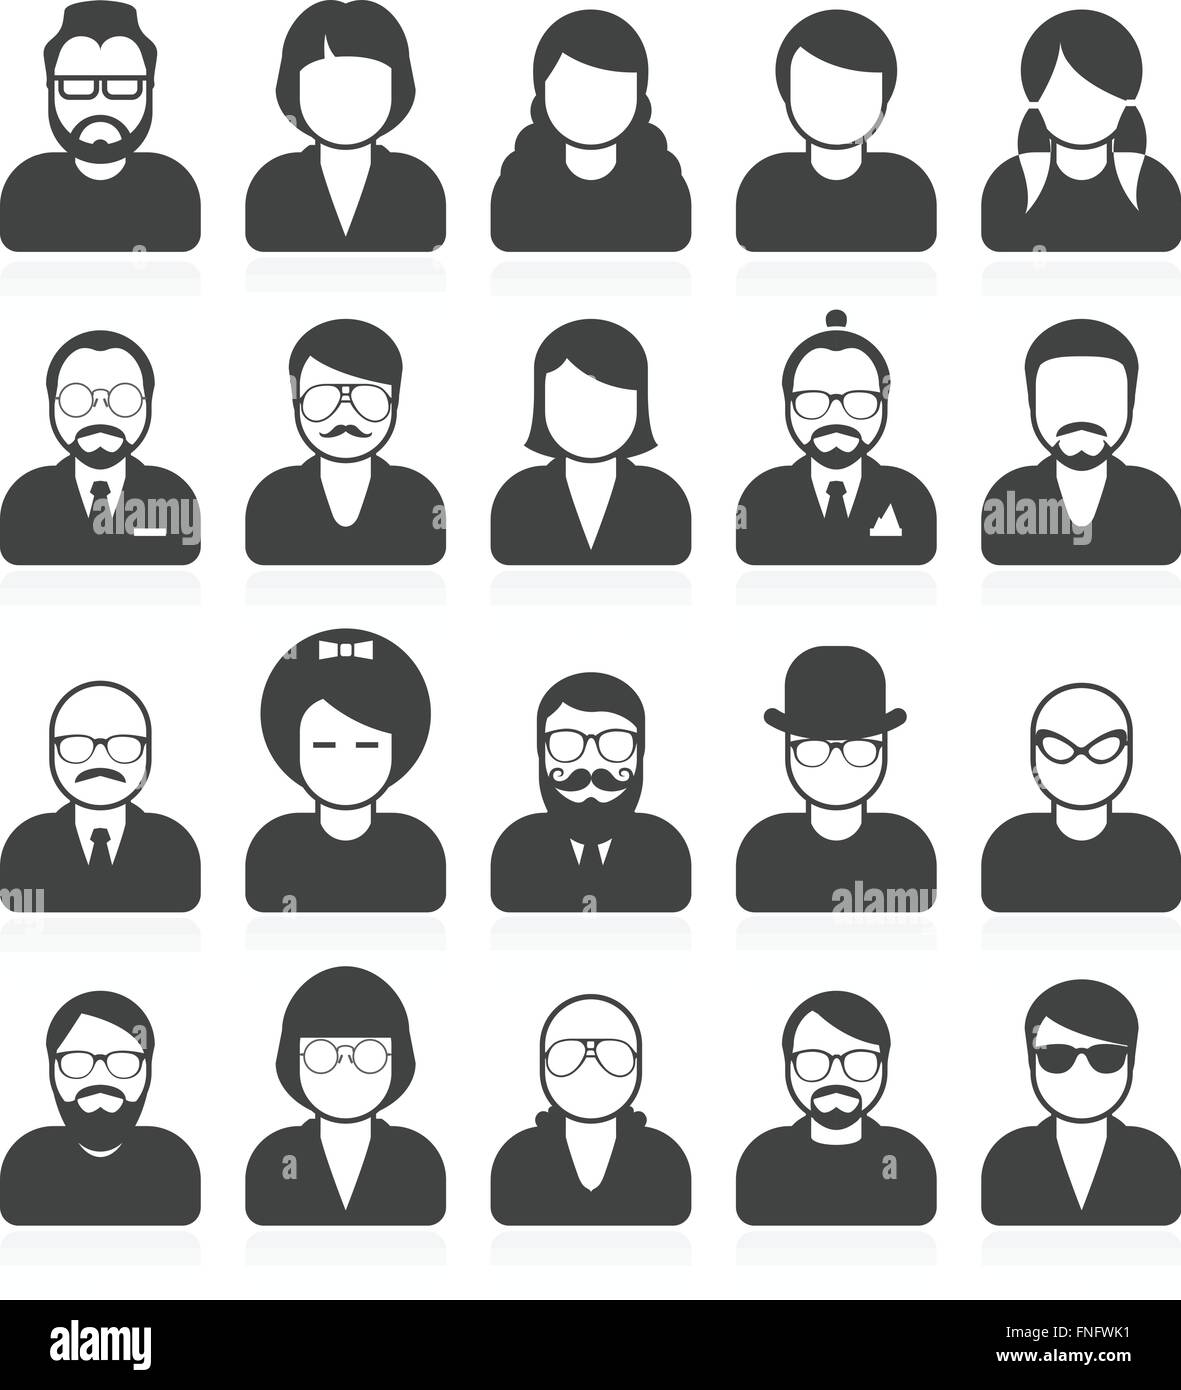 La gente semplice avatar e userpics con stile differente e taglio di capelli Illustrazione Vettoriale